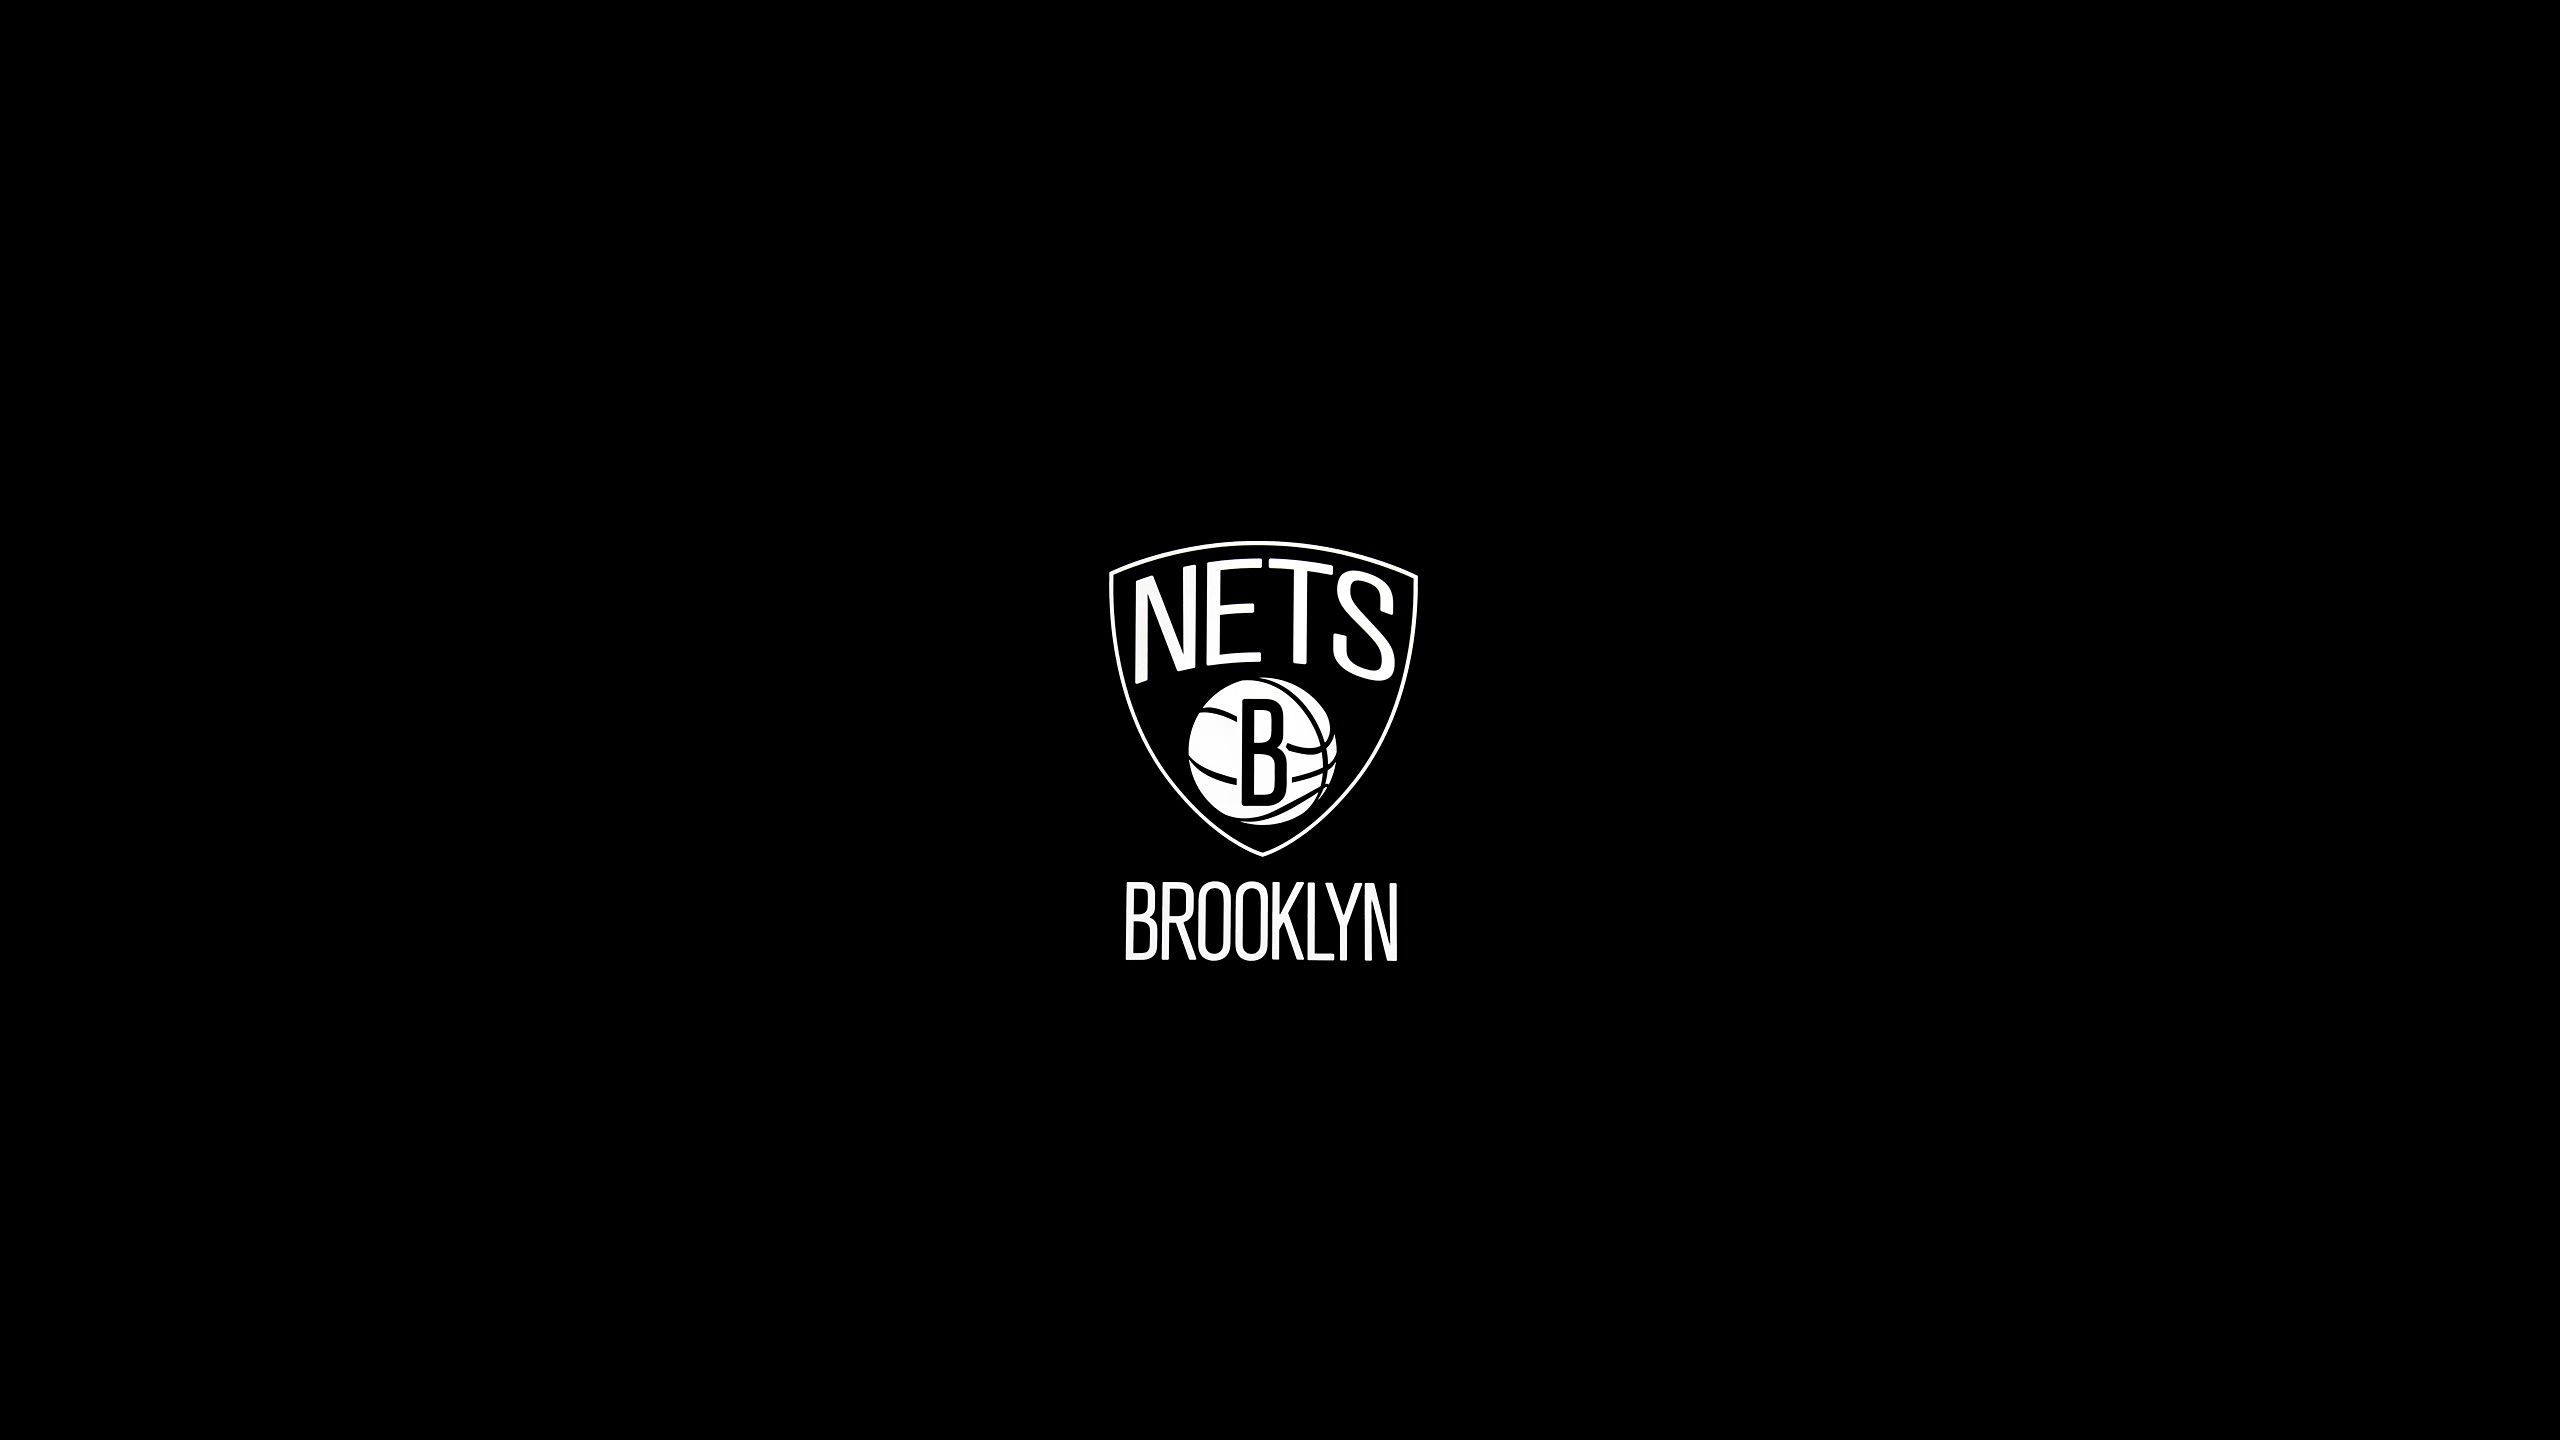 Brooklyn Nets Wallpaper 17920 2560x1440px